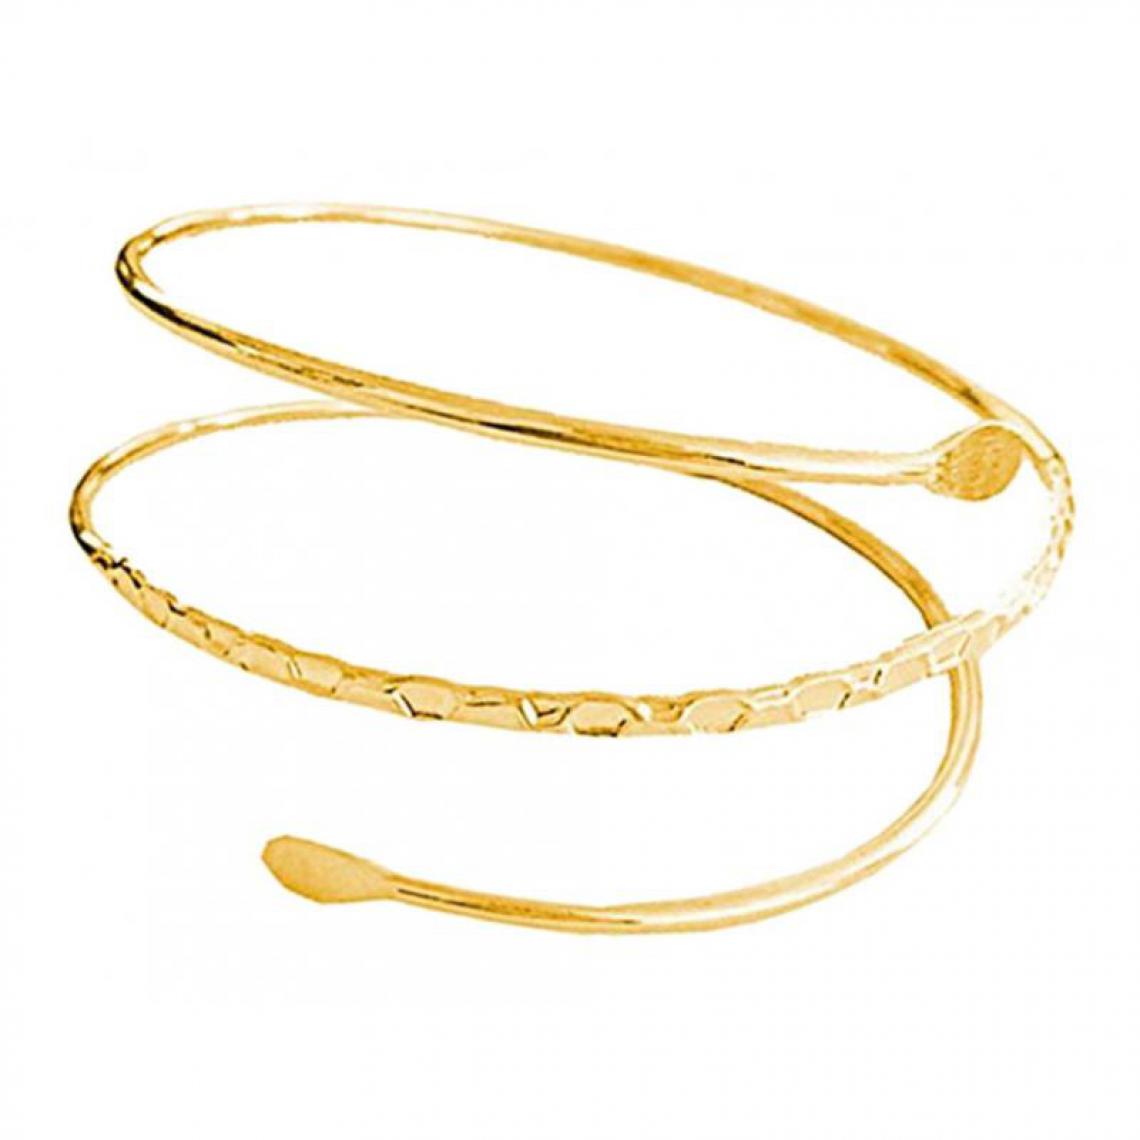 marque generique - Bracelet manchette bras en métal minimaliste brassard brassard bracelet argent - Bracelet connecté